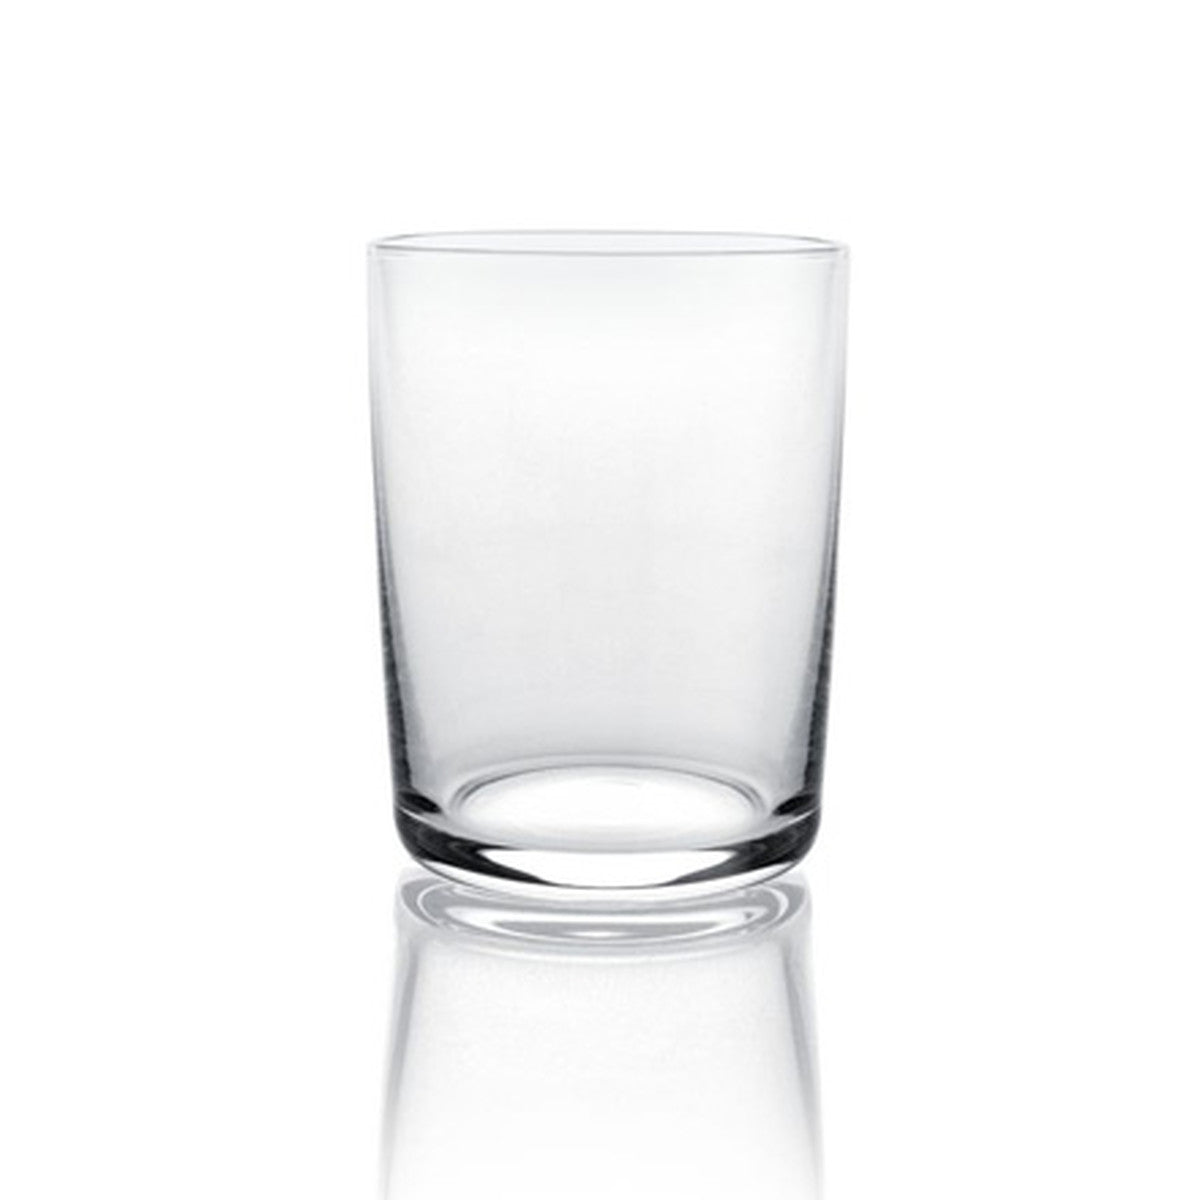 Jasper Morrison White Wine Glass (set of 4)